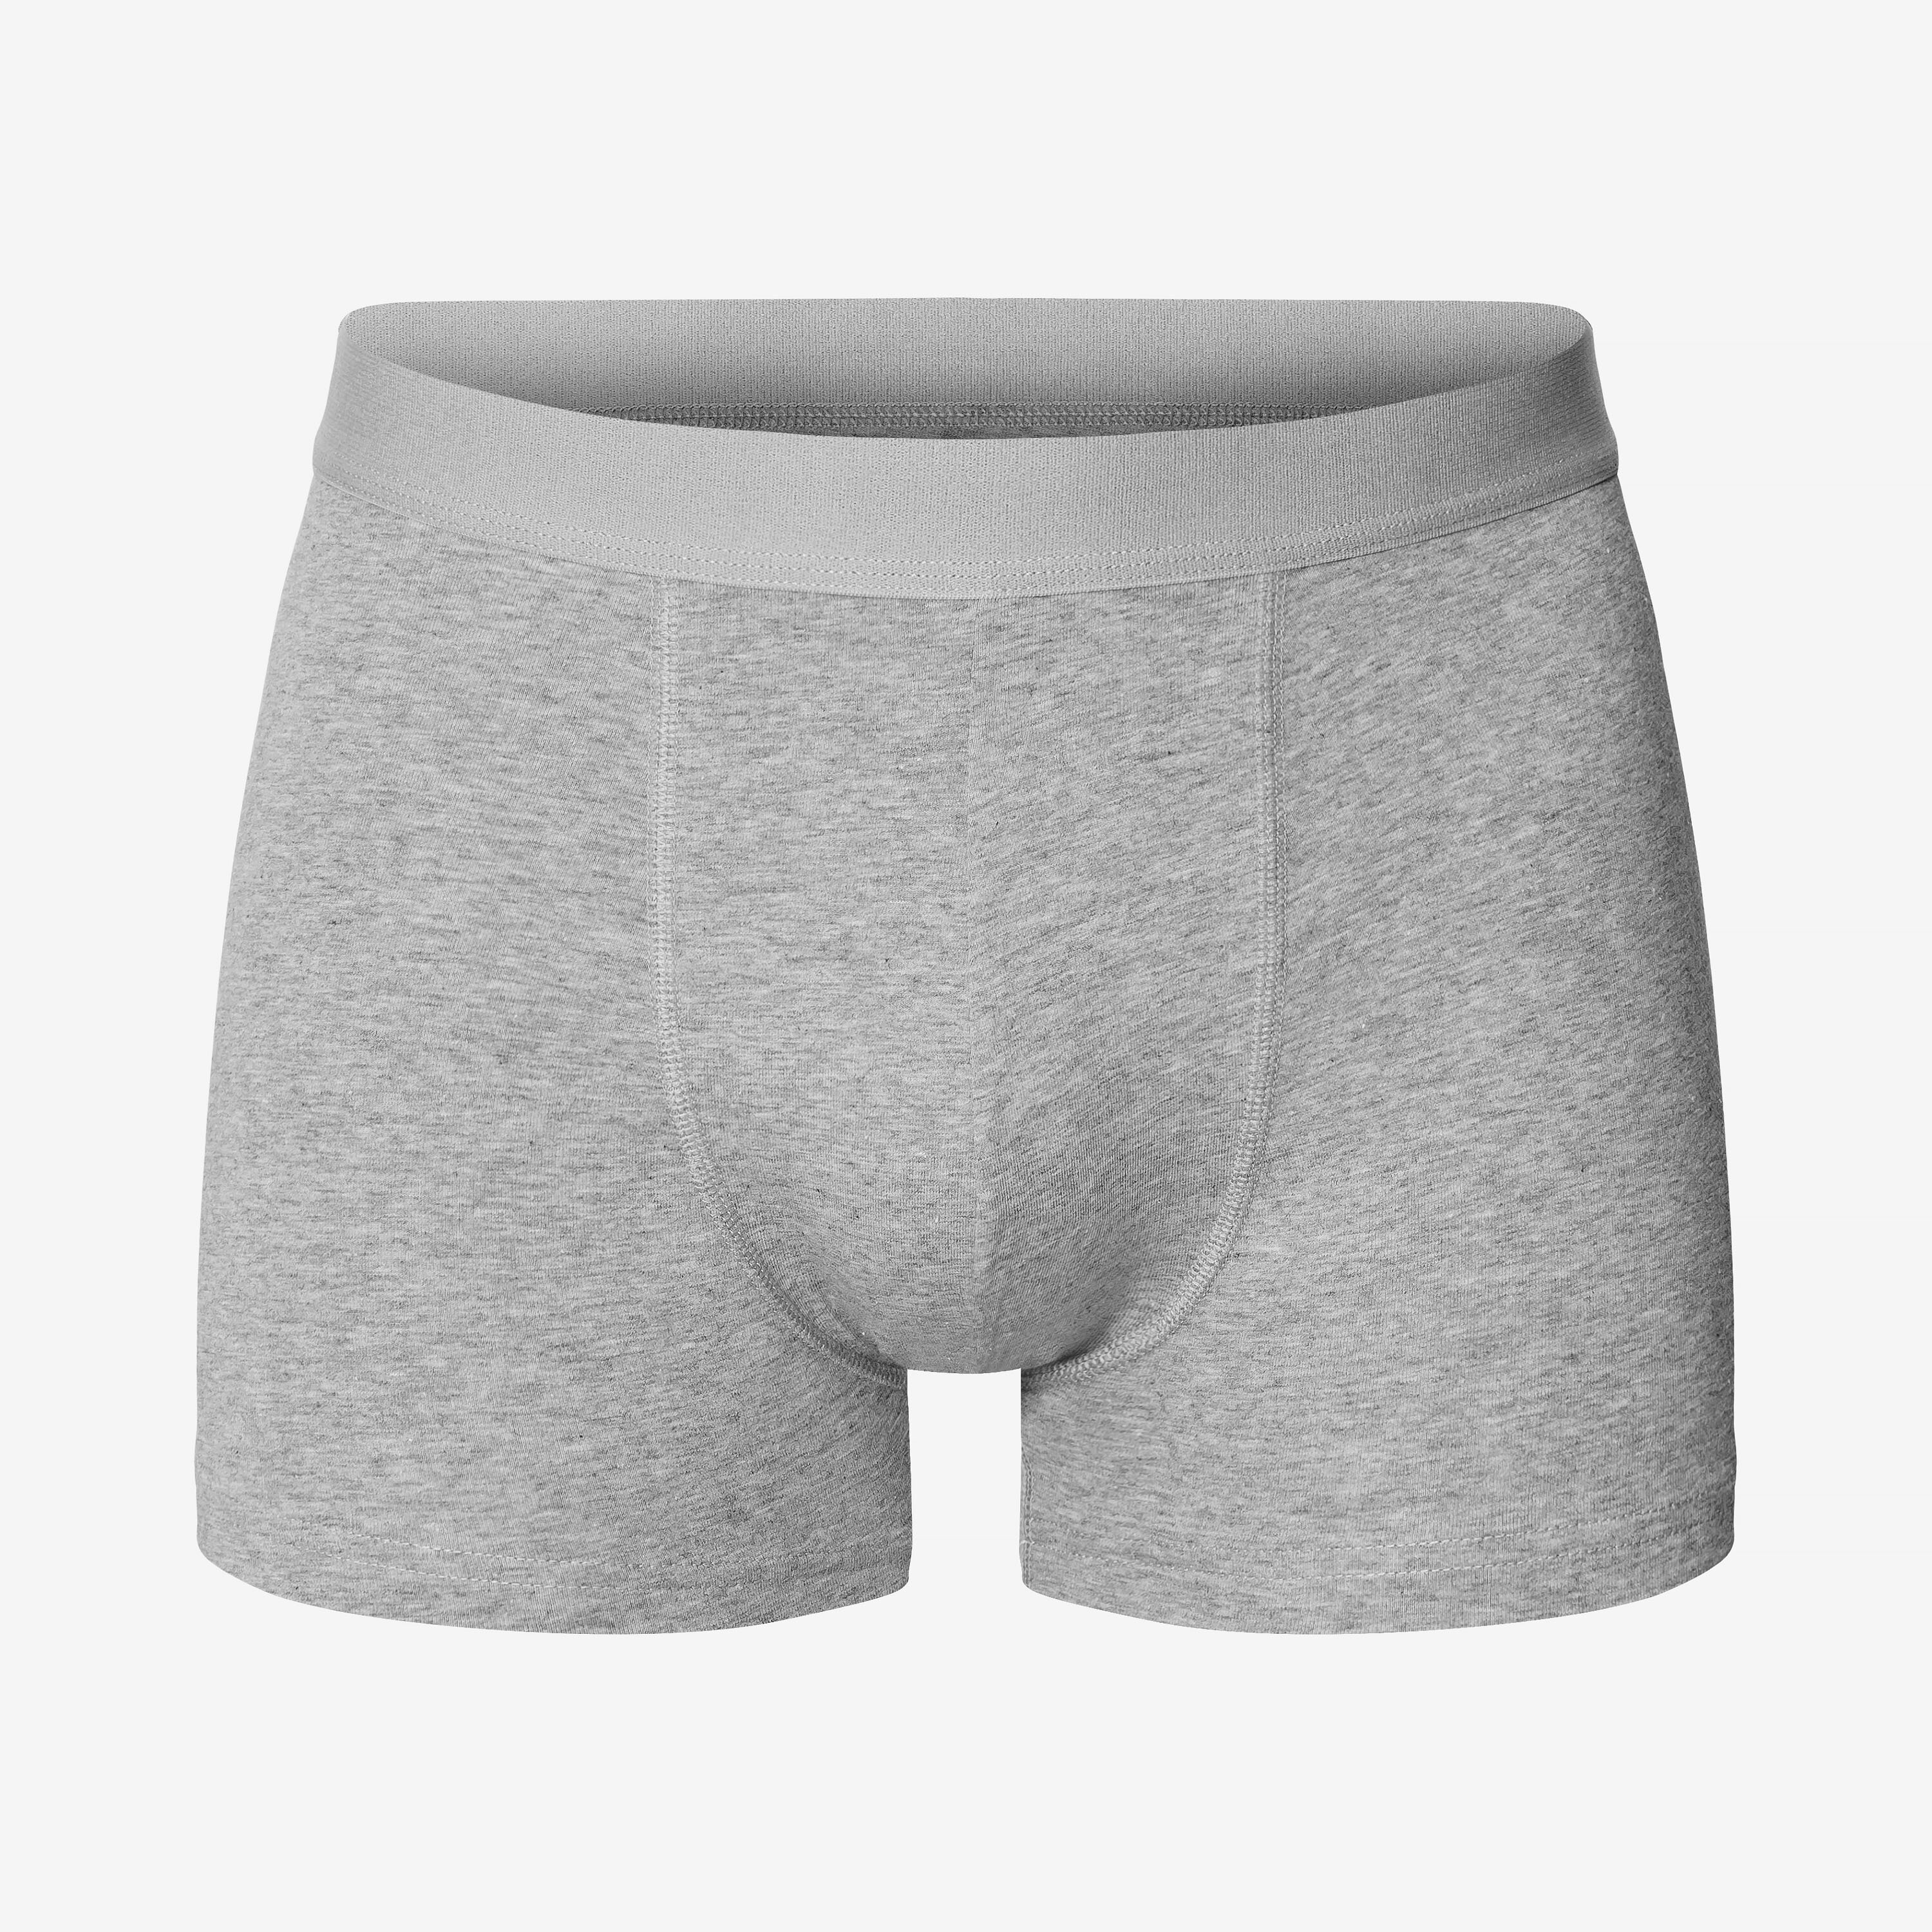 3pcs/Pack Men Comfy Underwear Shorts Briefs Seamless Trunks Underpants Lot Boxer 